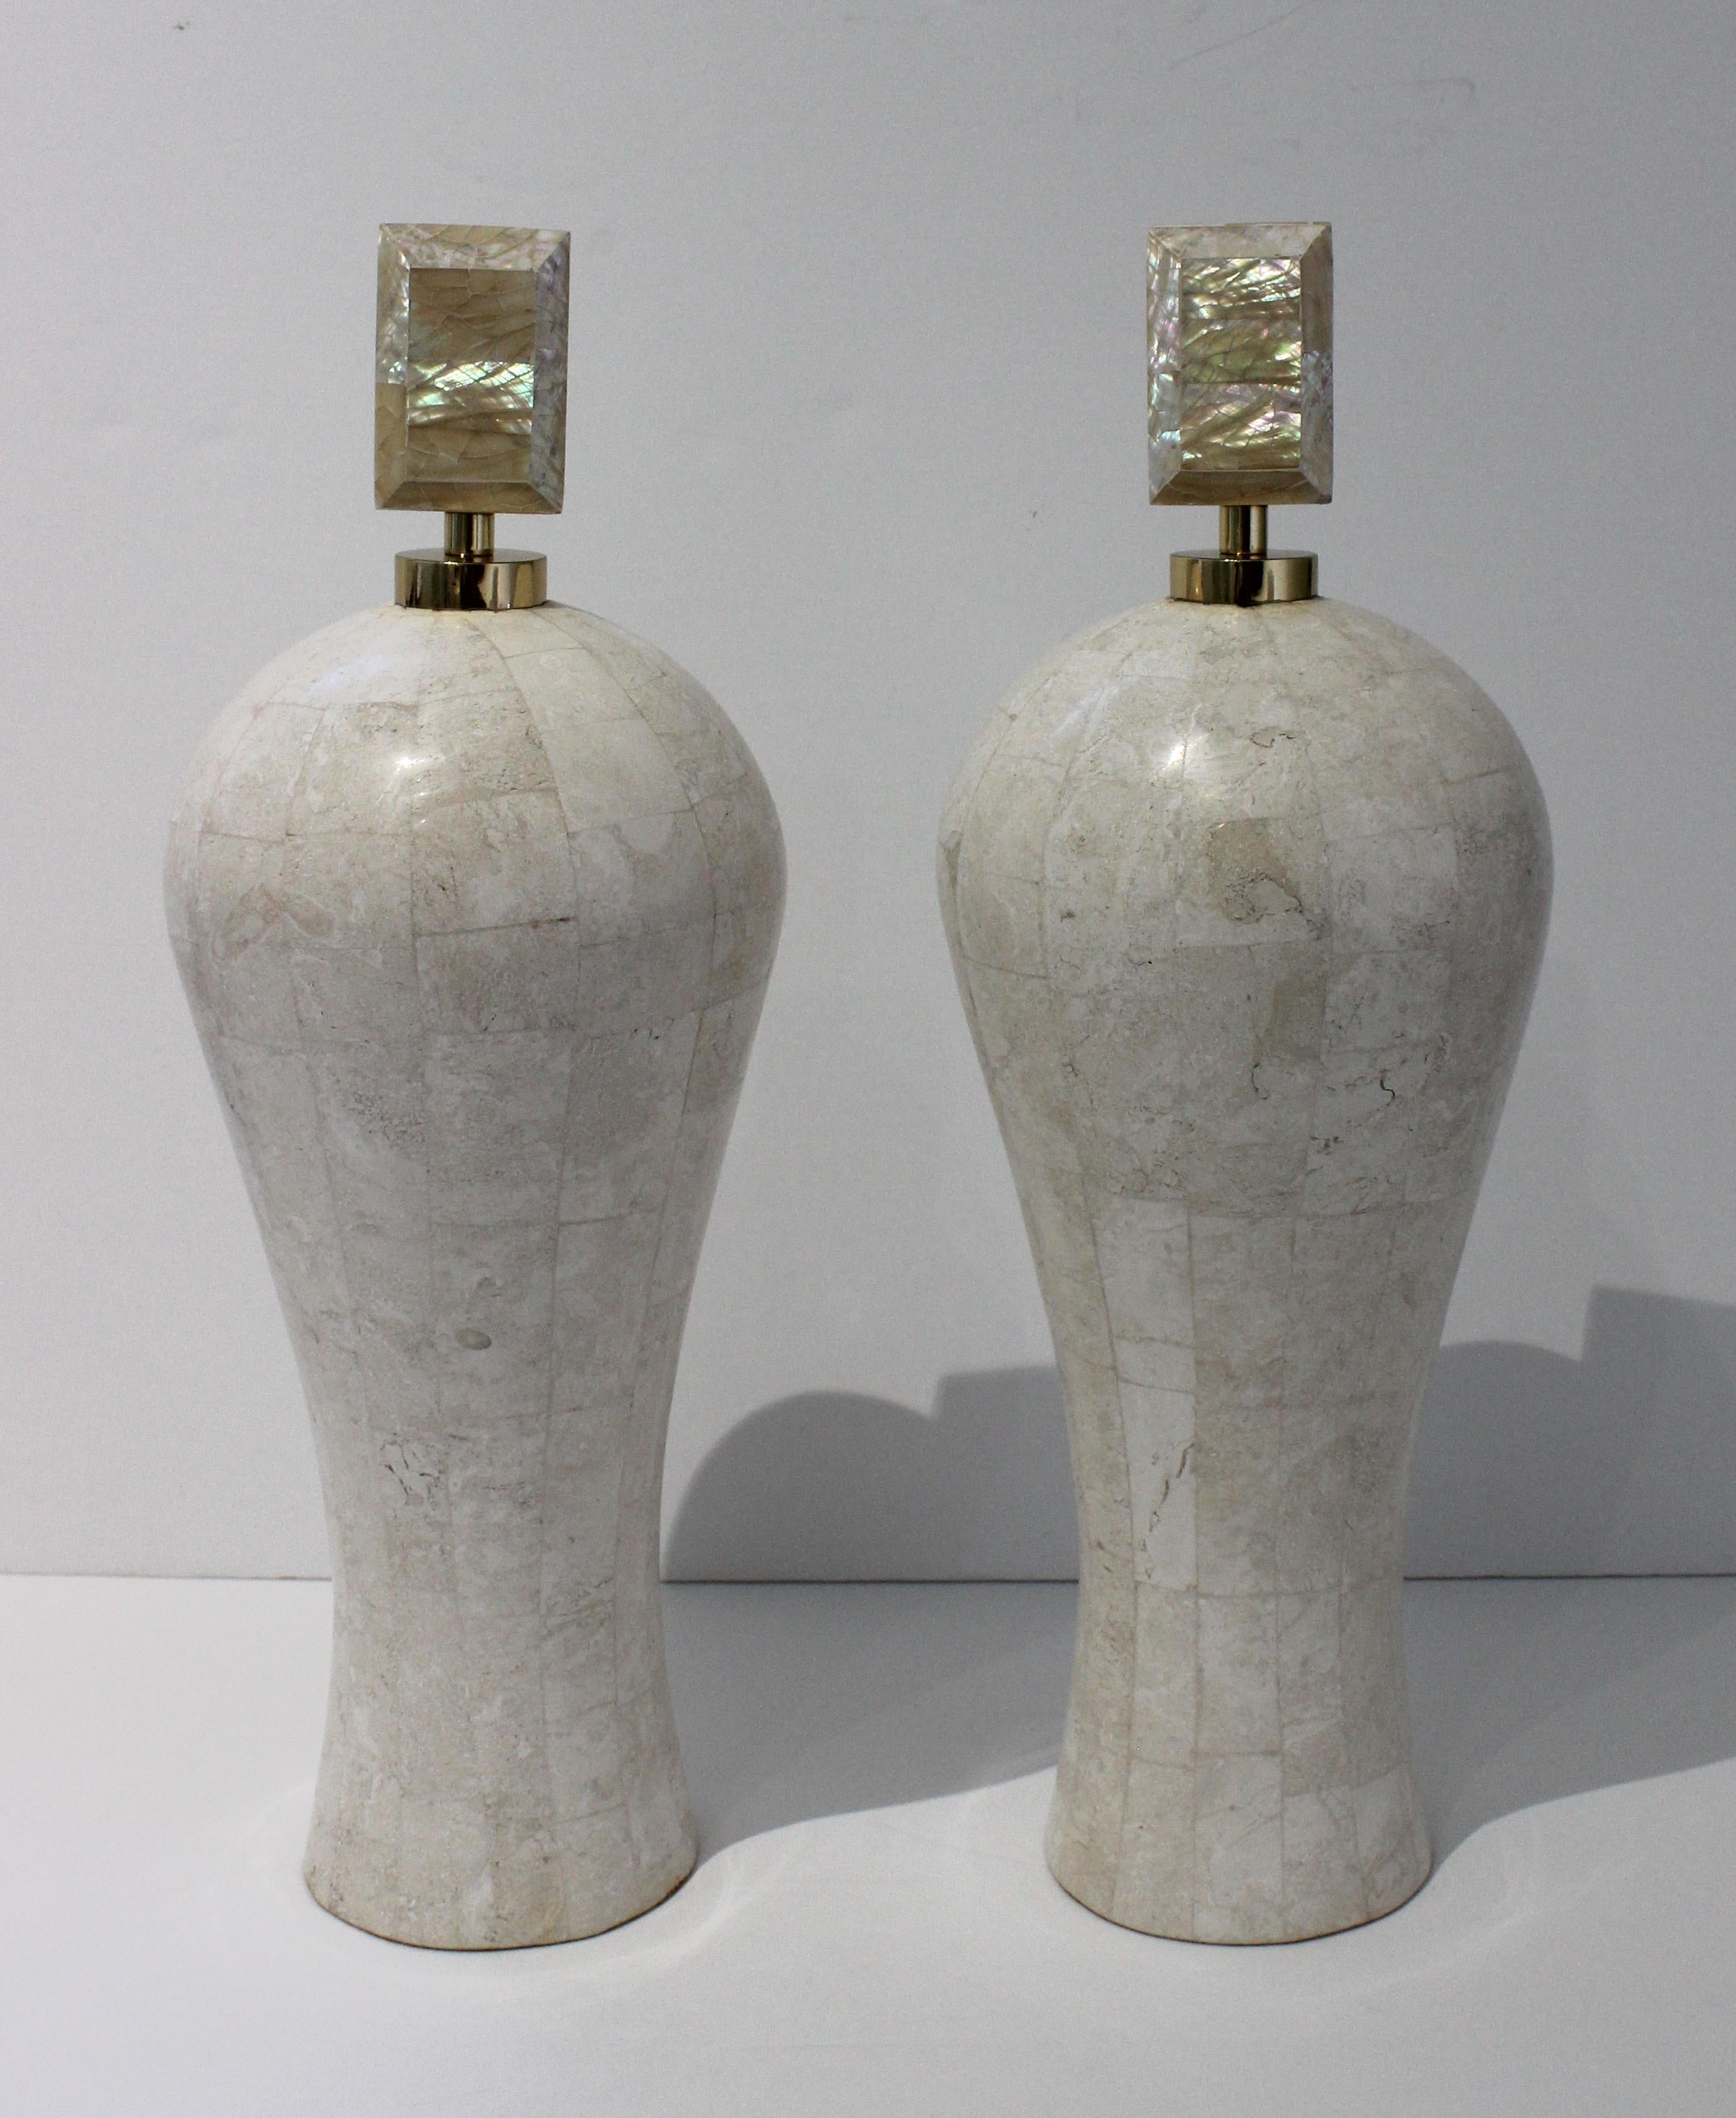 Stilvolle dekorative Marmorvasen mit Perlmutt- und Messingstopfen. Vintage Maitland-Smith Garnitur Vasen in Tessellated Marmor Perlmutt und Messing - ein Paar - aus einem Palm Beach Estate.

Da es sich um handgefertigte Stücke handelt, haben sie